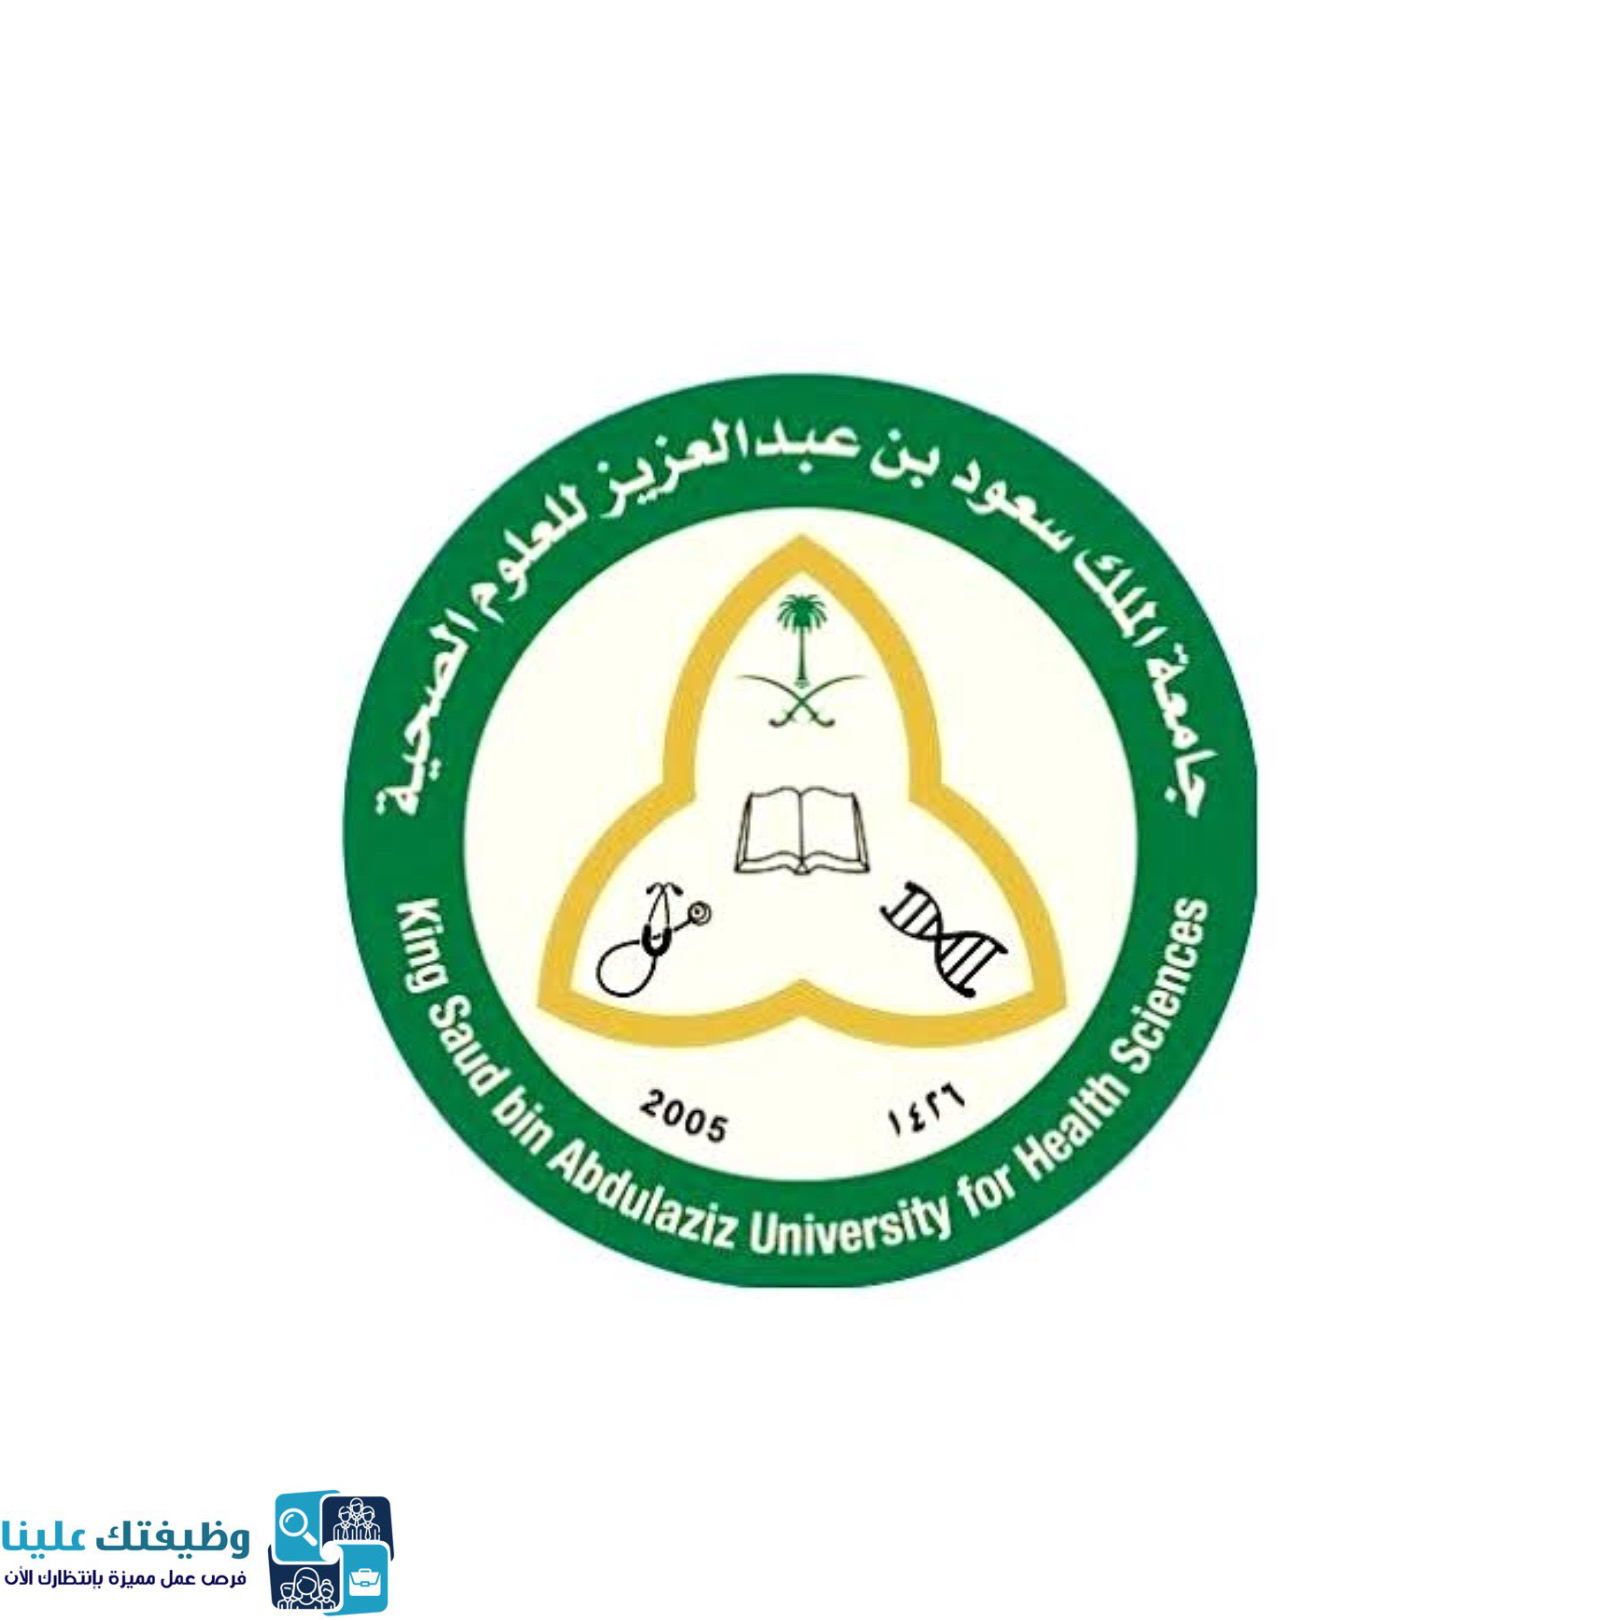 جامعة الملك سعود الطبية تقديم